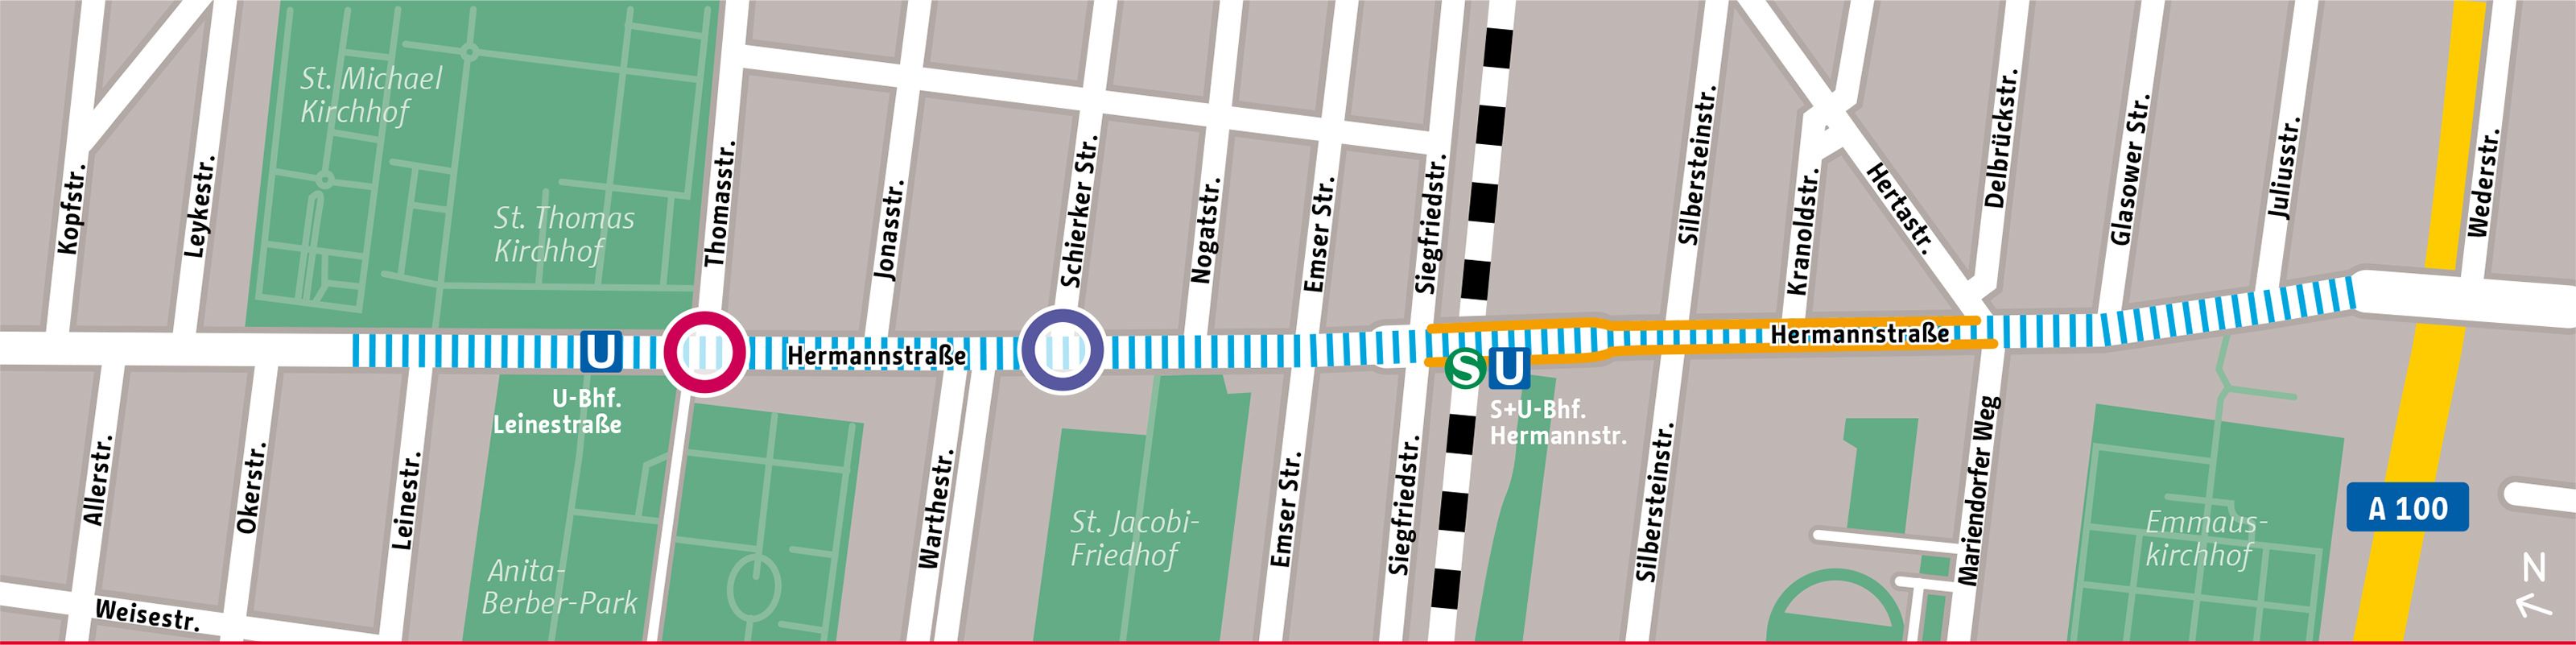 Kartenausschnitt Fahrradsttraße Hermannstraße